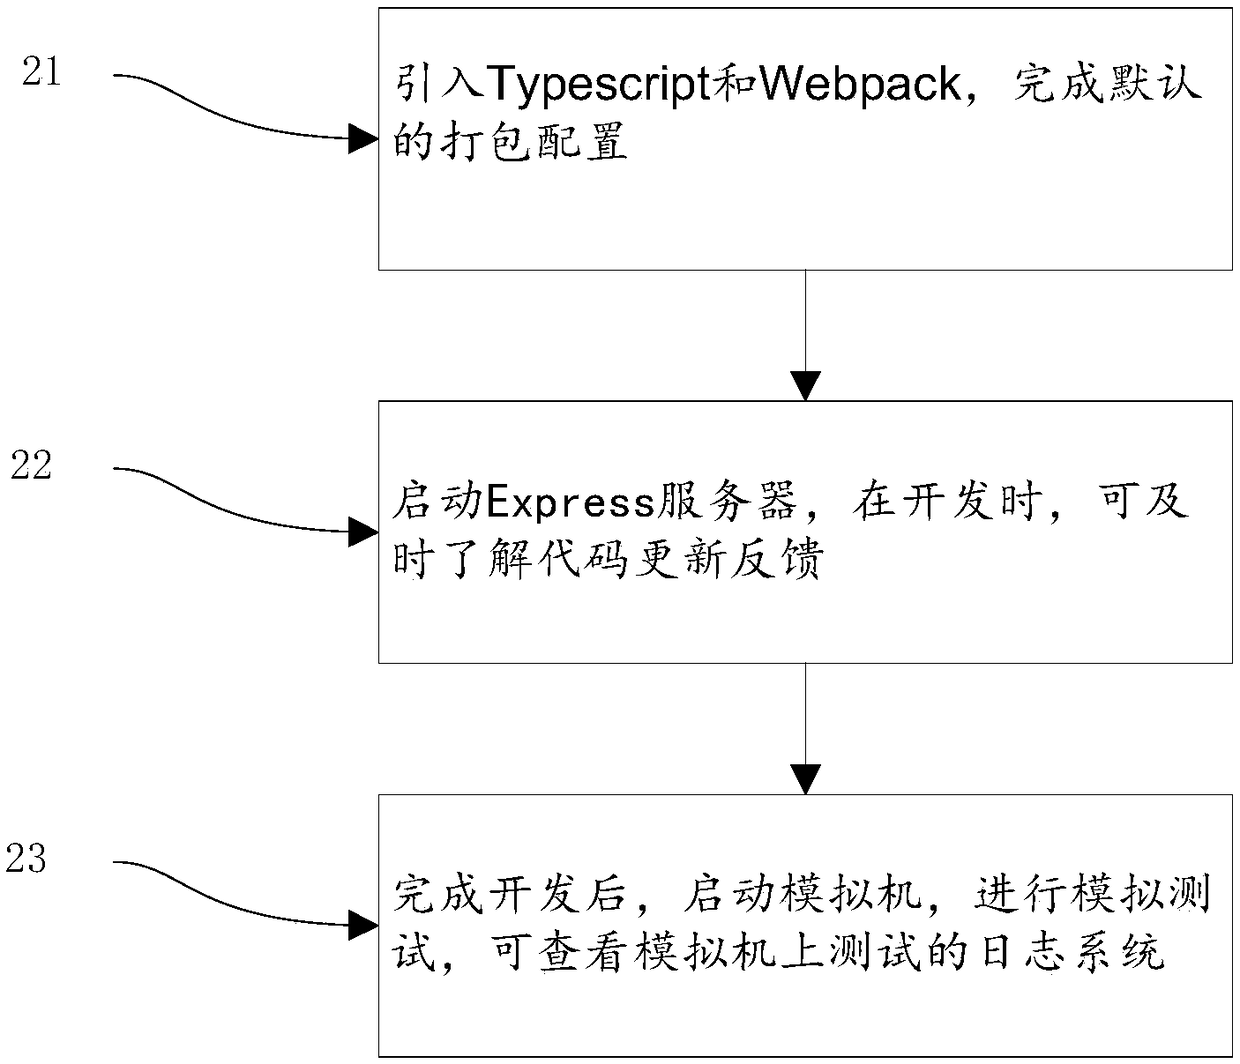 Hybrid development framework based on Cordova and Typescript and framework design method